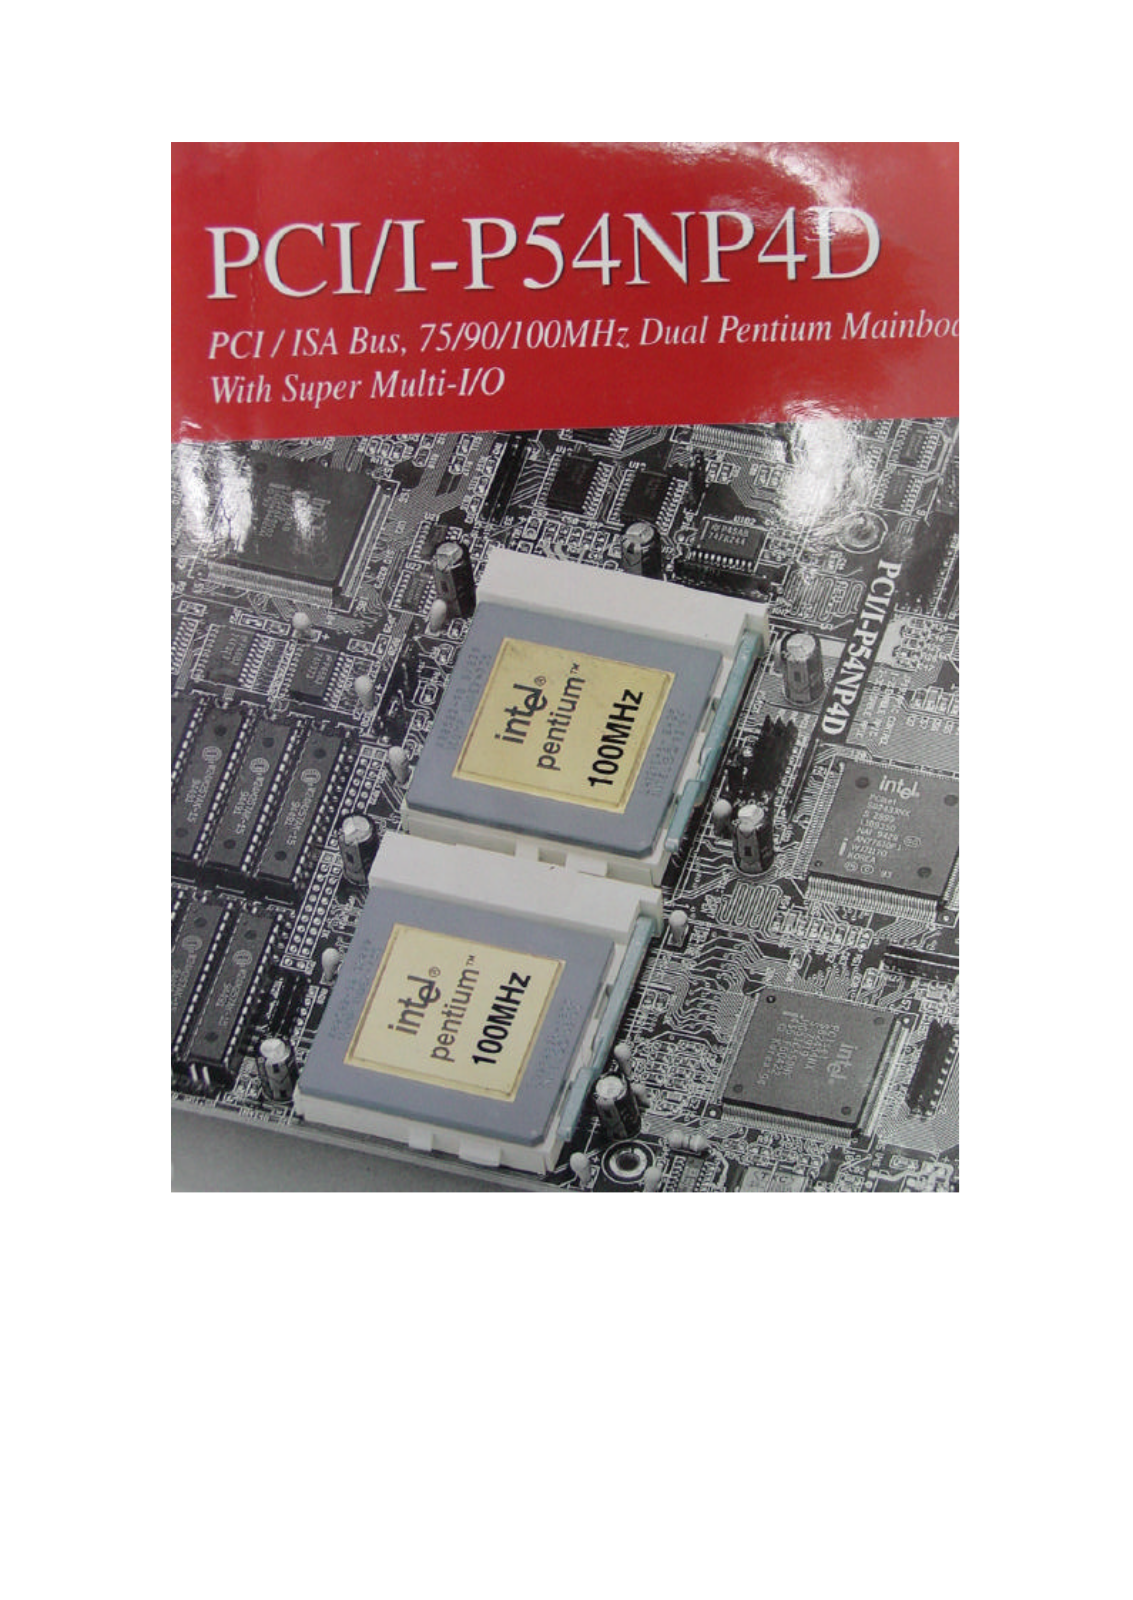 ASUS PCII-P54NP4D User Manual